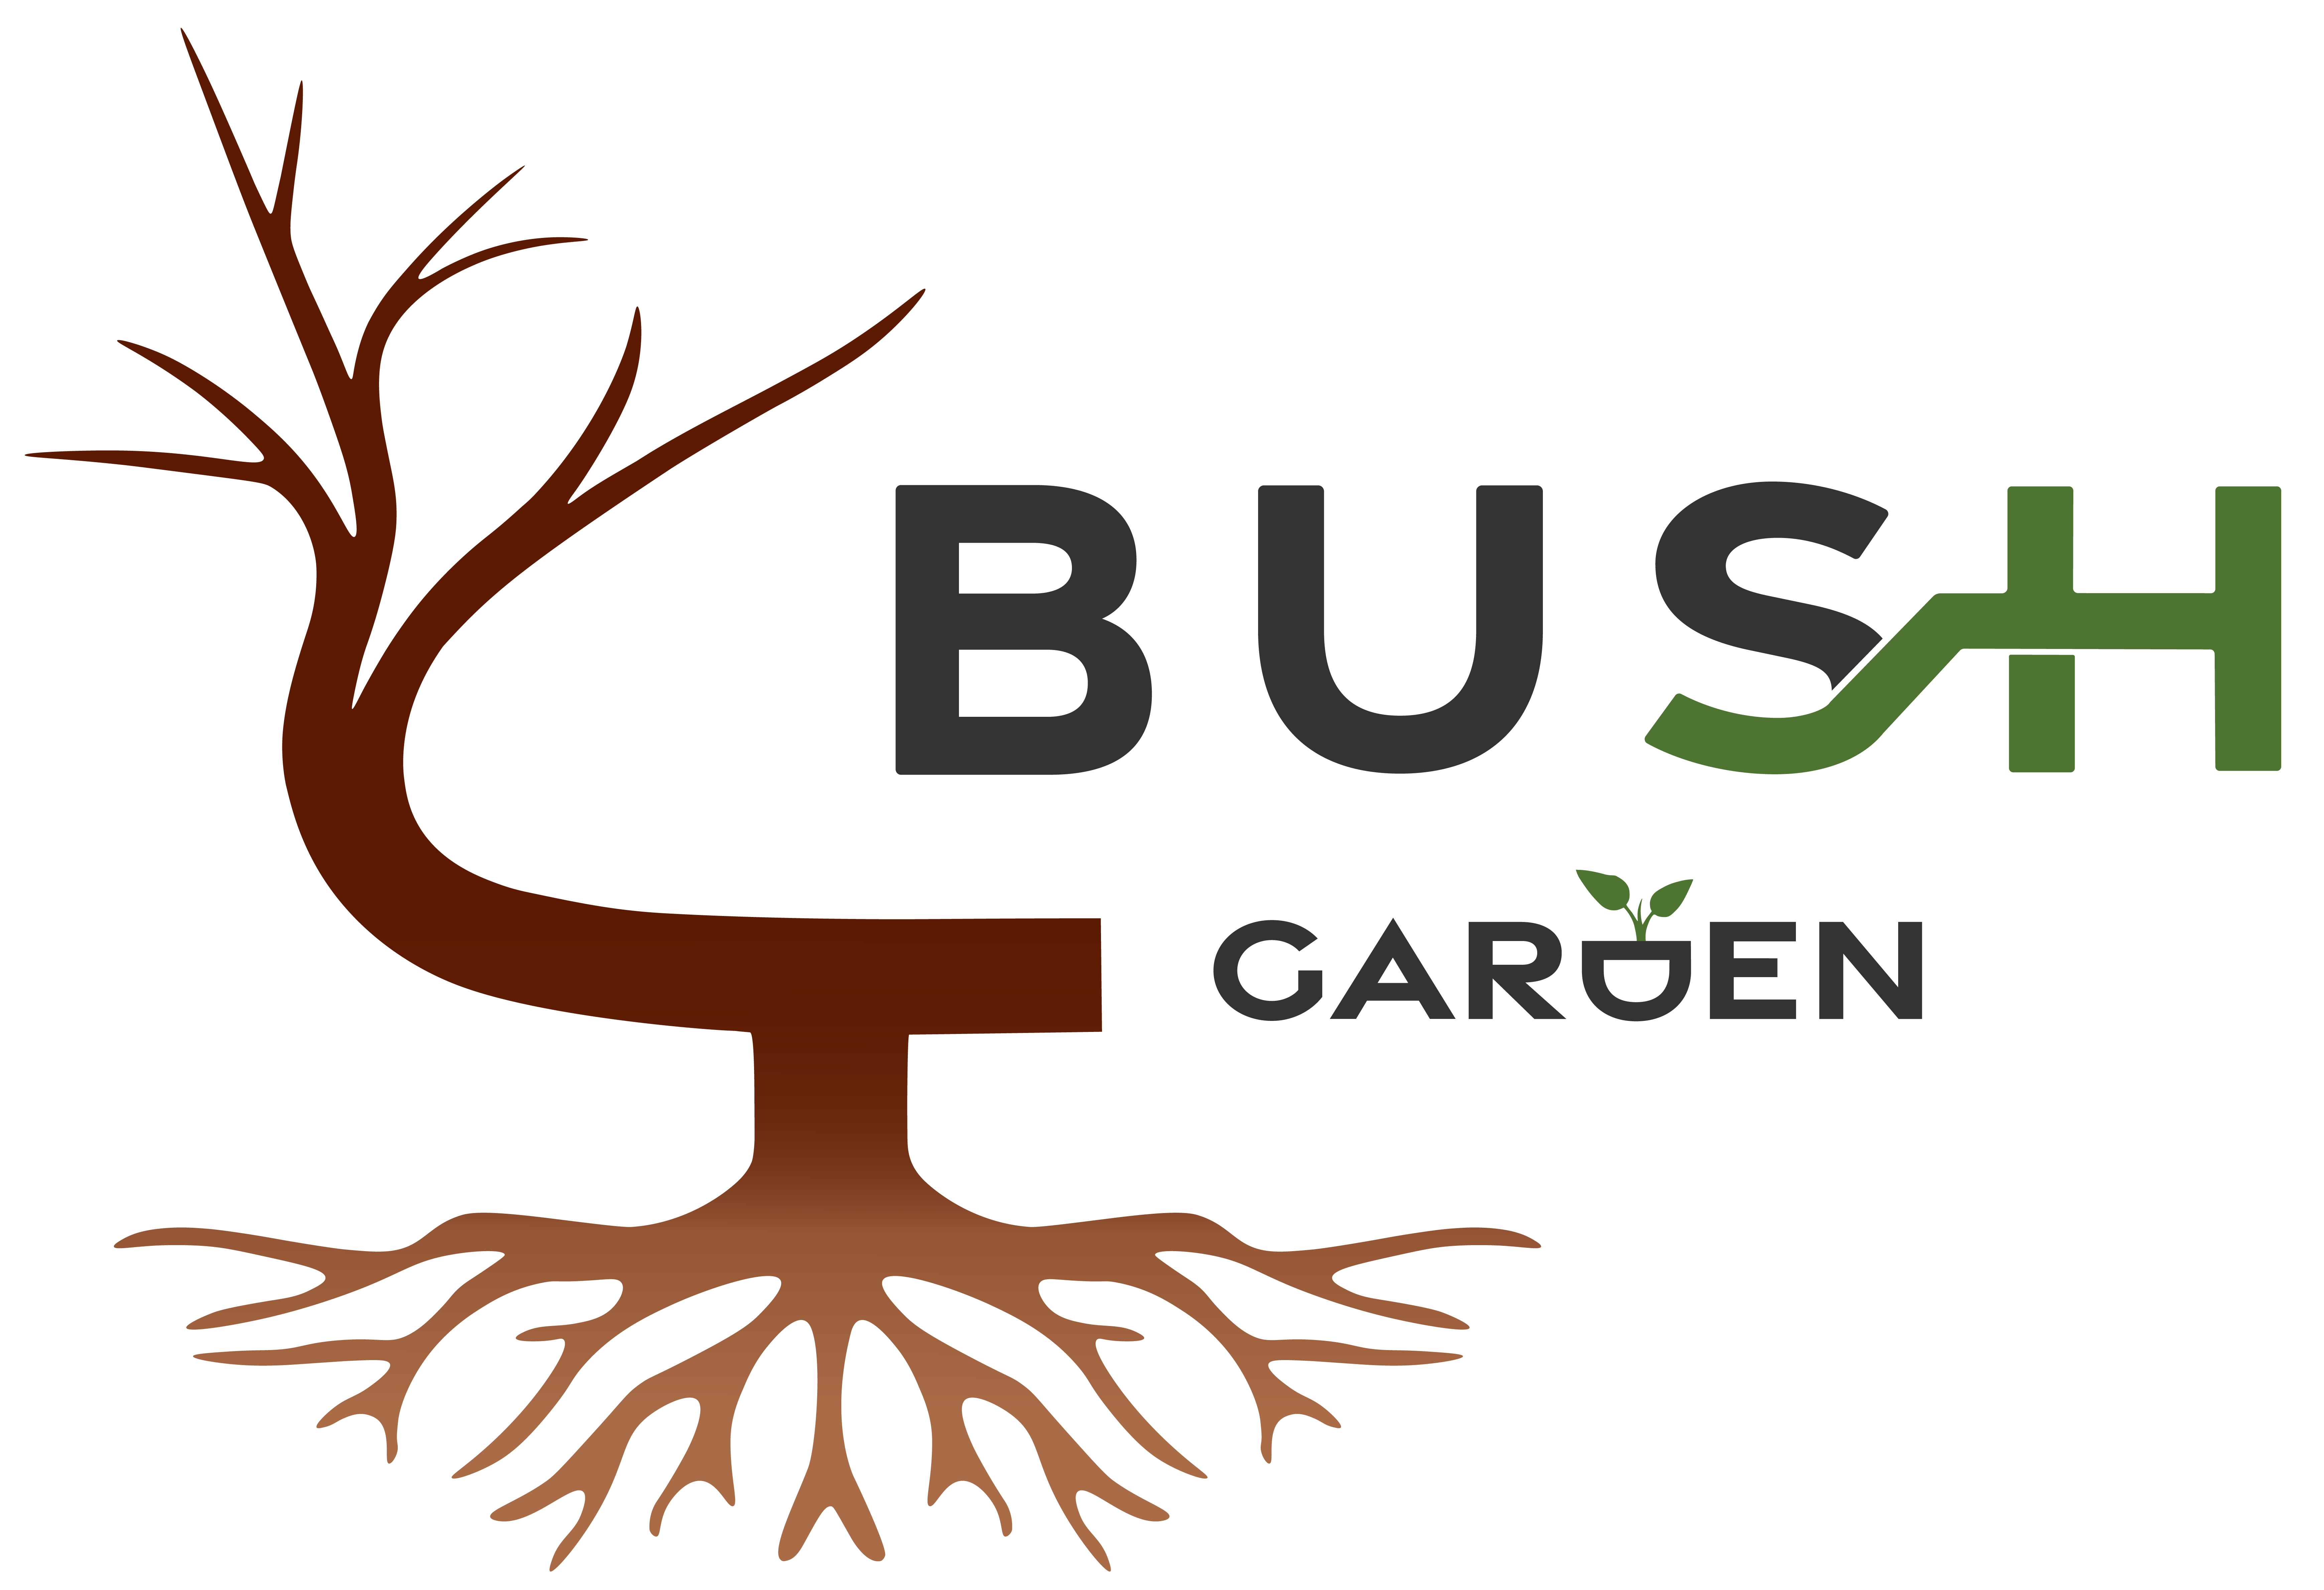 (c) Bush-garden.com